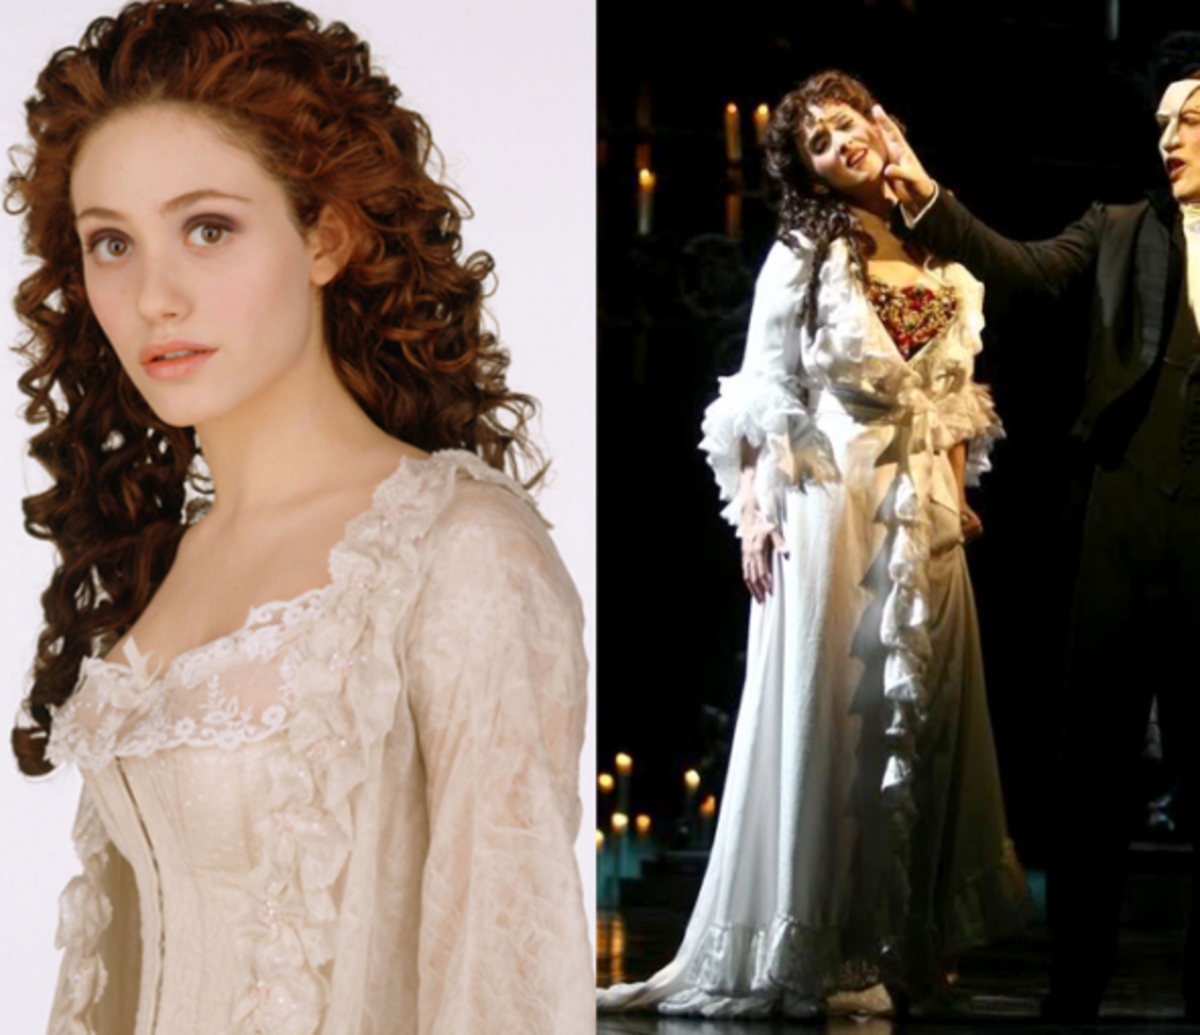 Christine Daaé's Costumes From "Phantom": Musical vs. Movie - HobbyLark